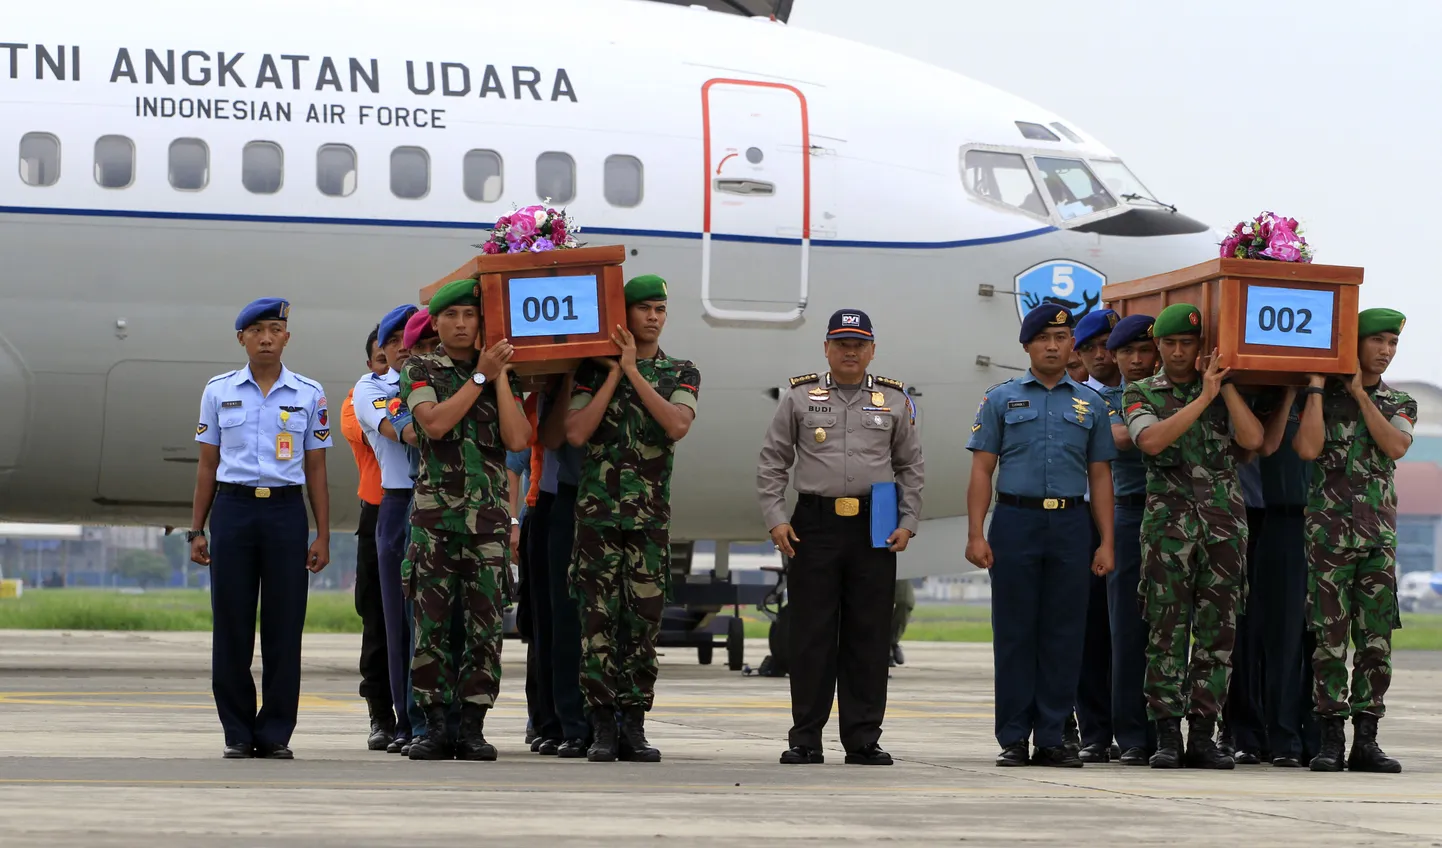 Тела погибших в авиакатастрофе доставили в Индонезию.